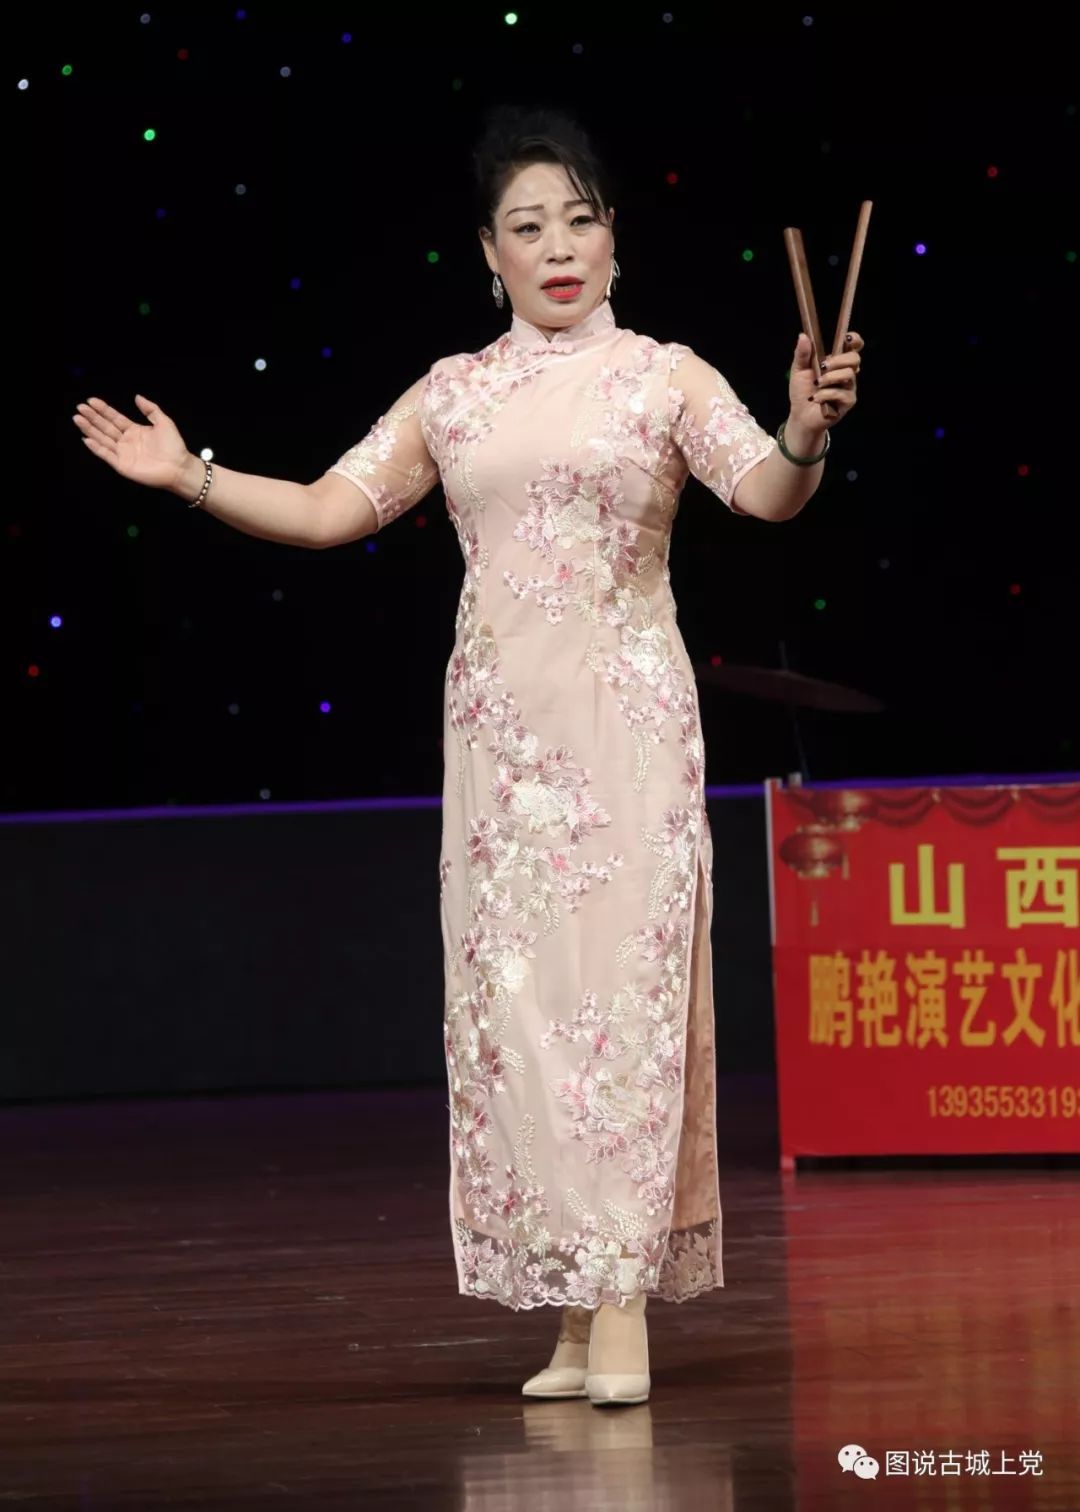 壶关县鹏艳演艺公司在潞州剧院表演上党鼓书《刘公案》等剧目